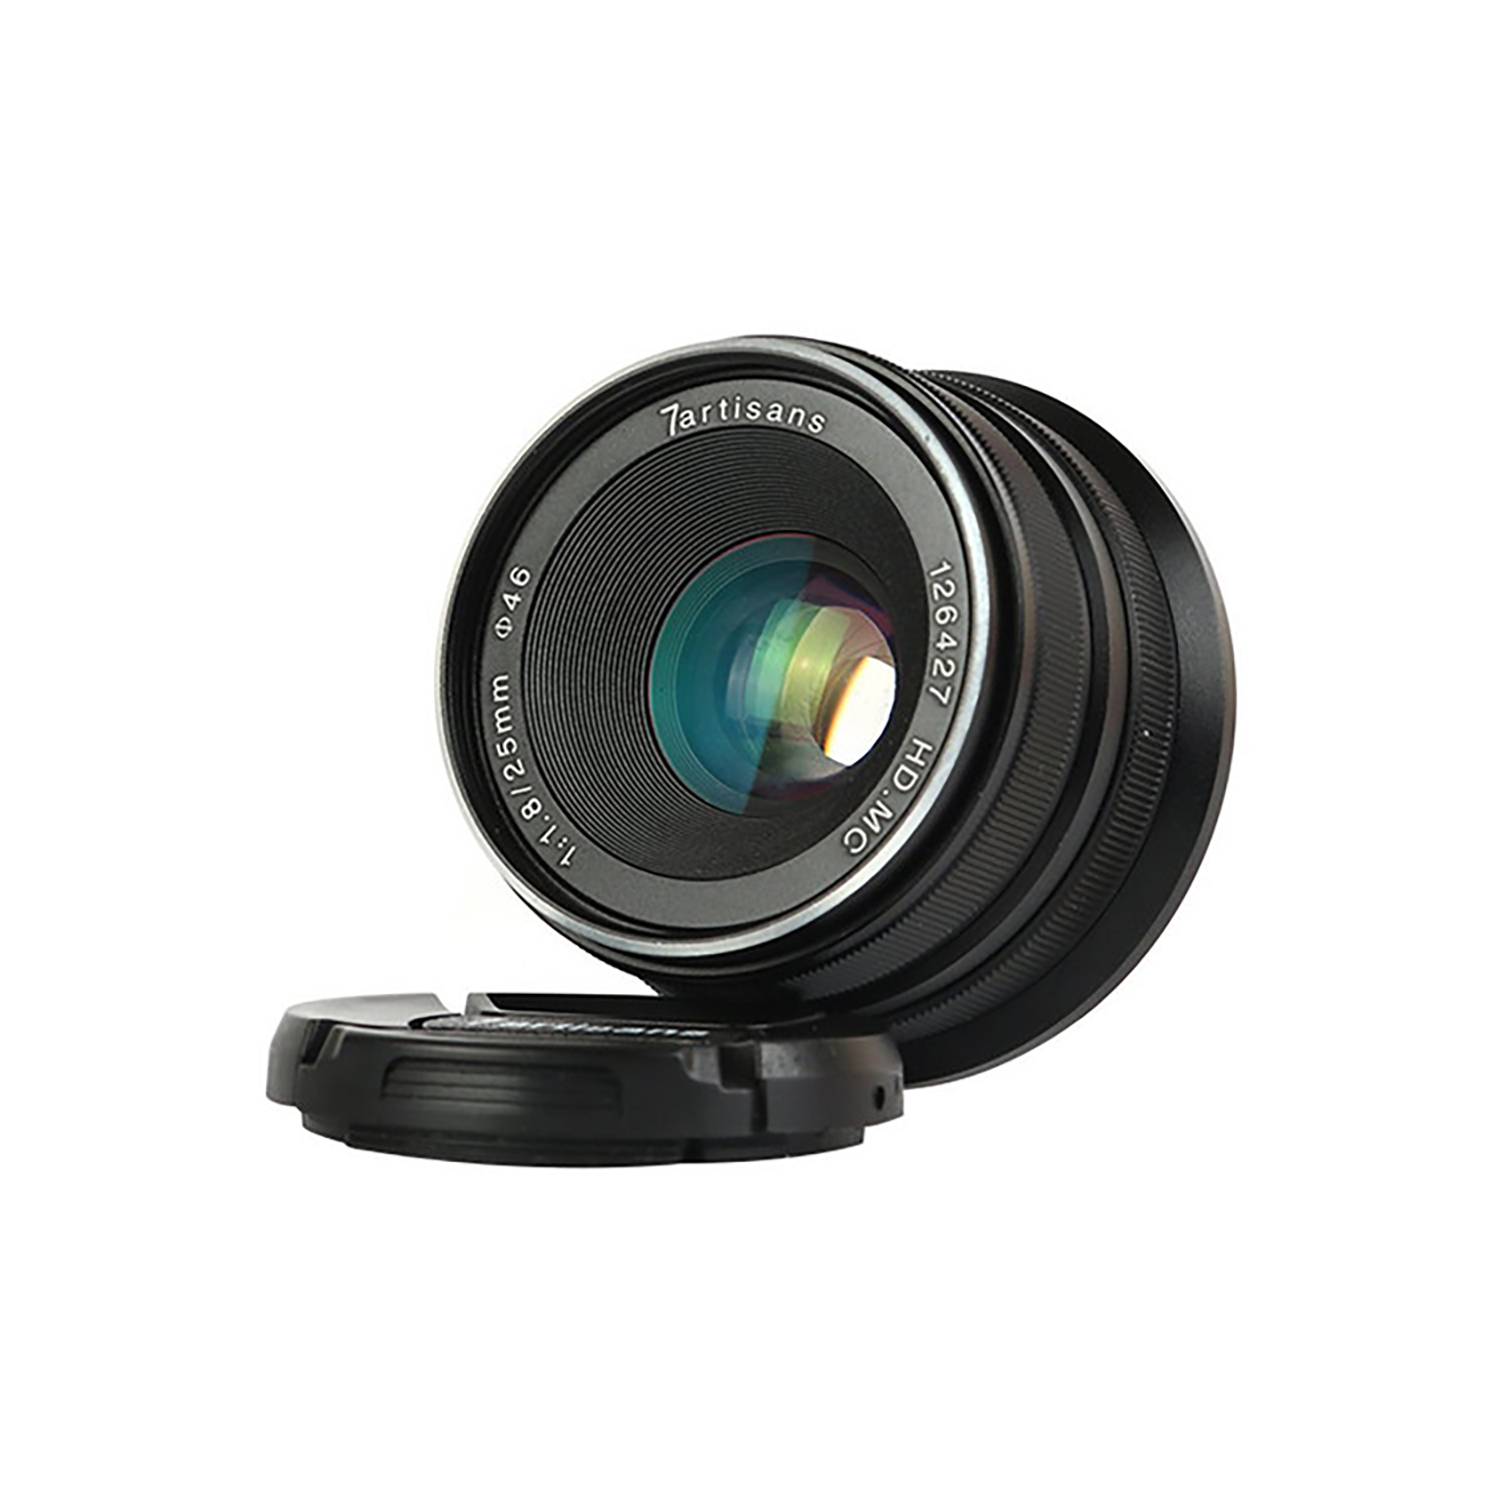 7artisans photoélectrique 25 mm f / 1,8 lentille pour le mont Fujifilm x